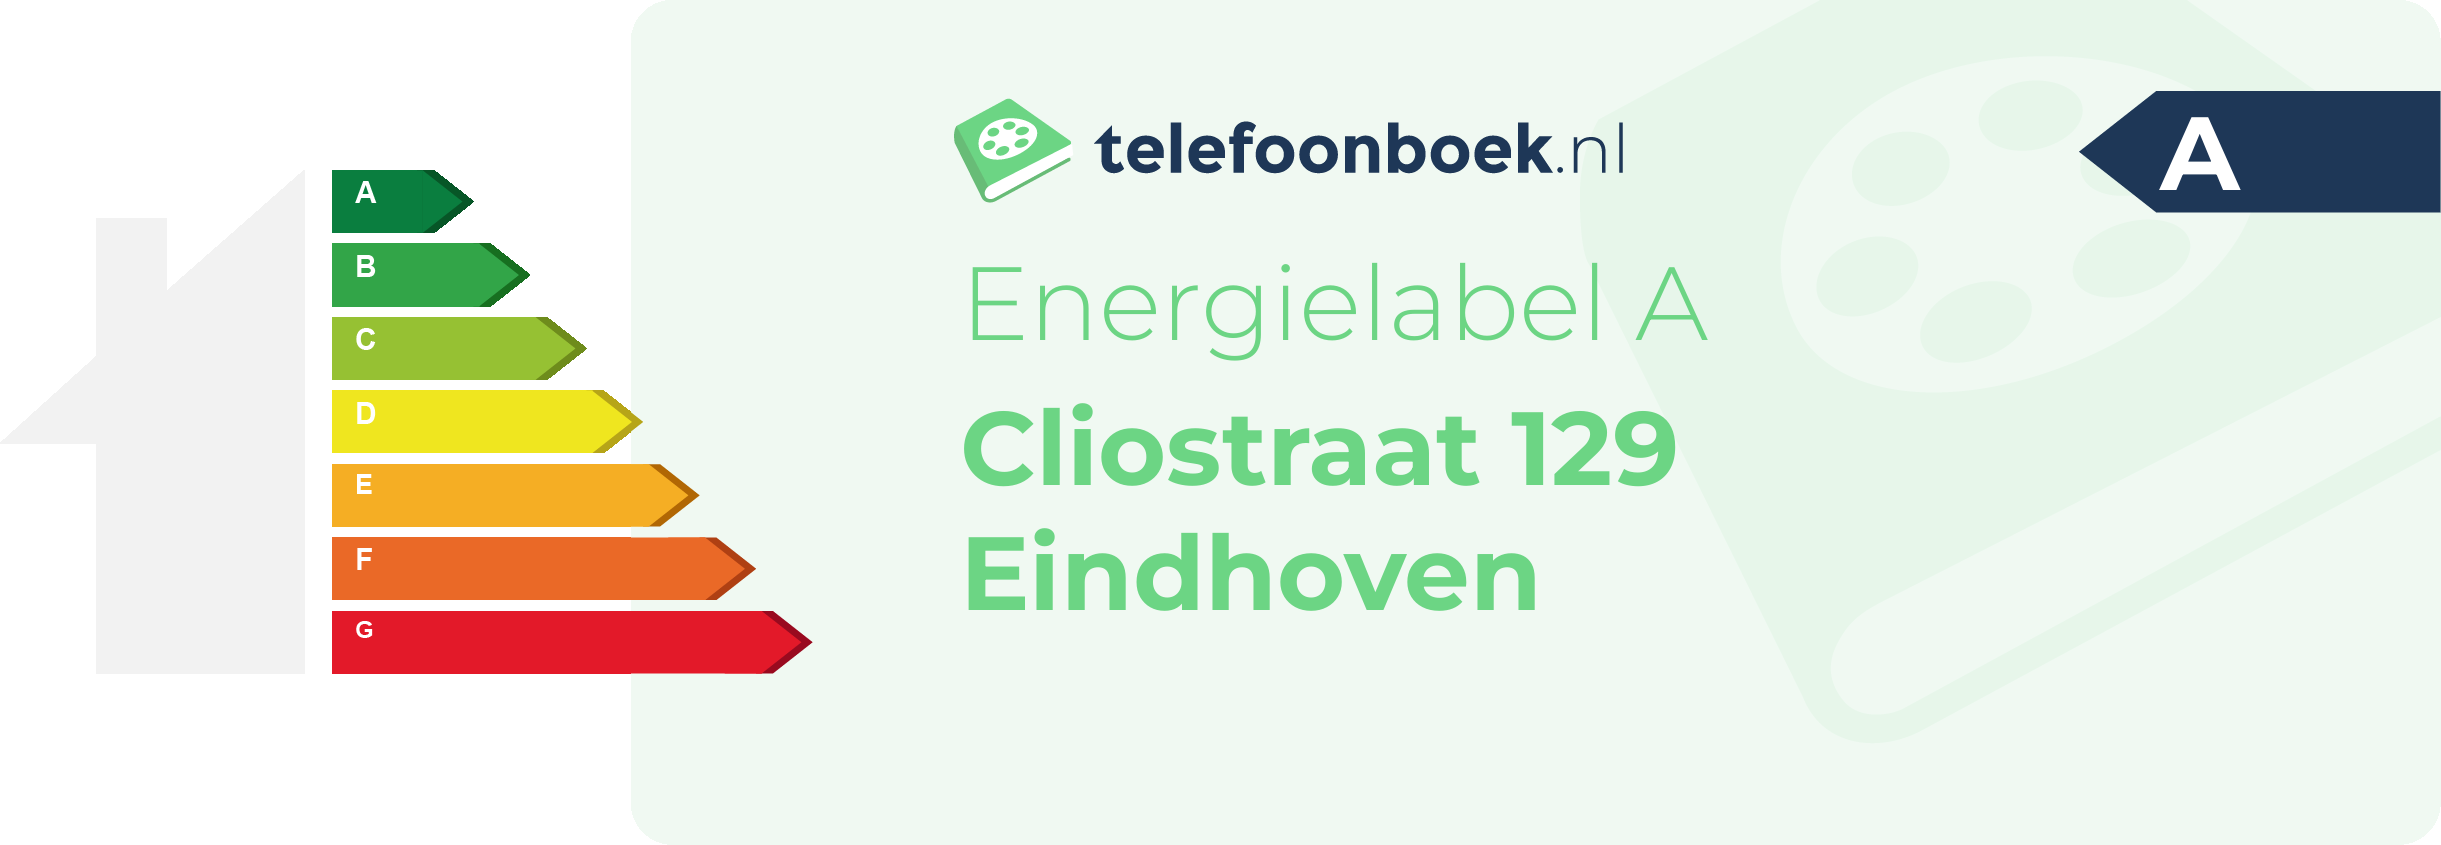 Energielabel Cliostraat 129 Eindhoven